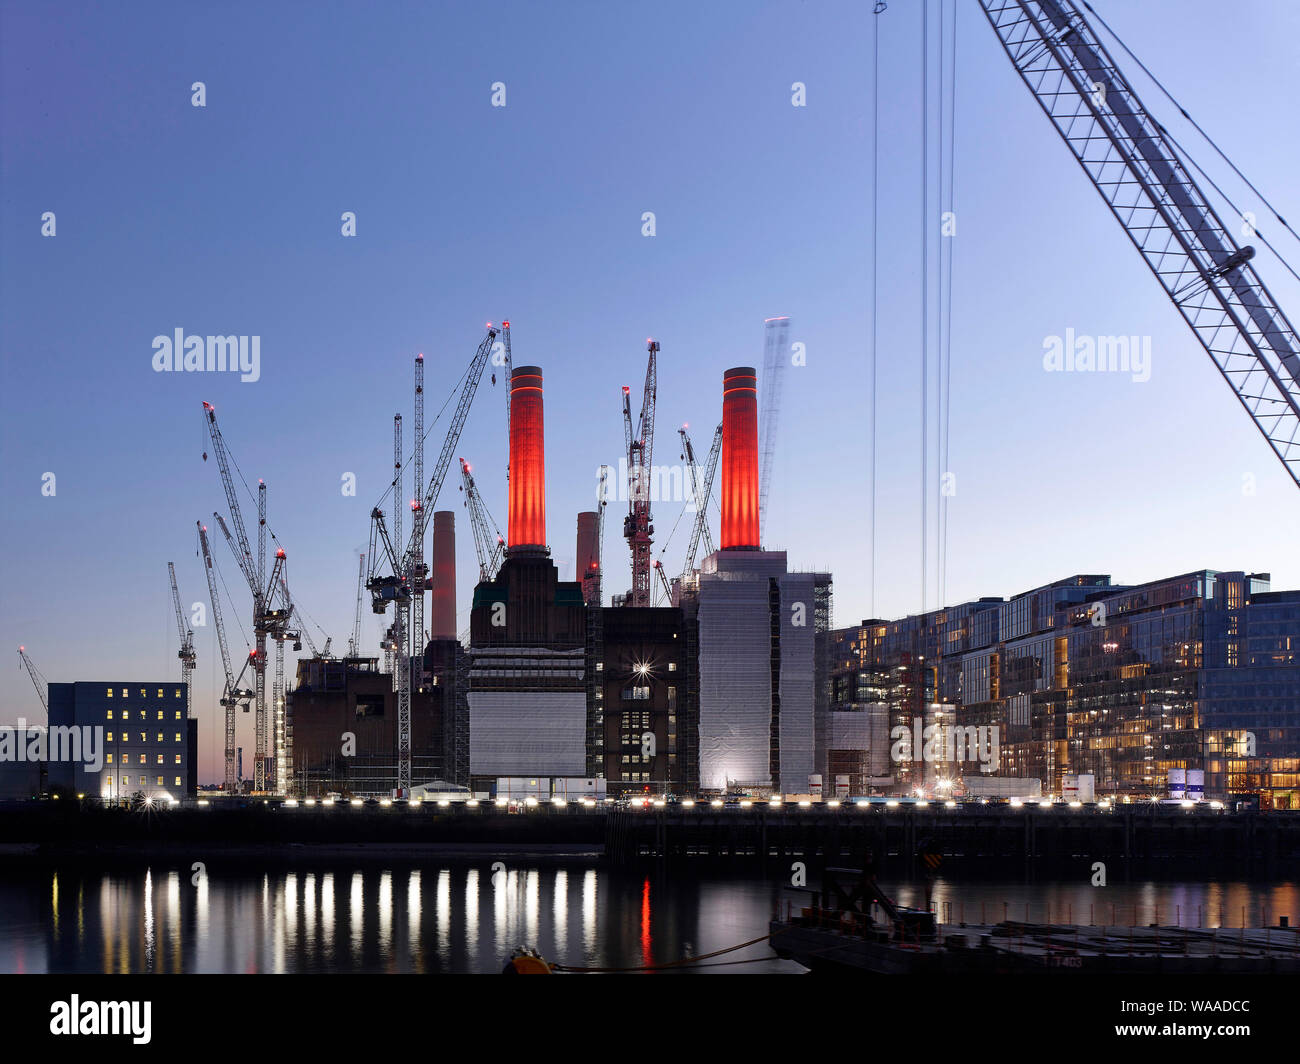 Blick über die Themse mit beleuchteten Baustelle. Battersea Power Station 2019, London, Vereinigtes Königreich. Architekt: Verschiedene, 2019. Stockfoto